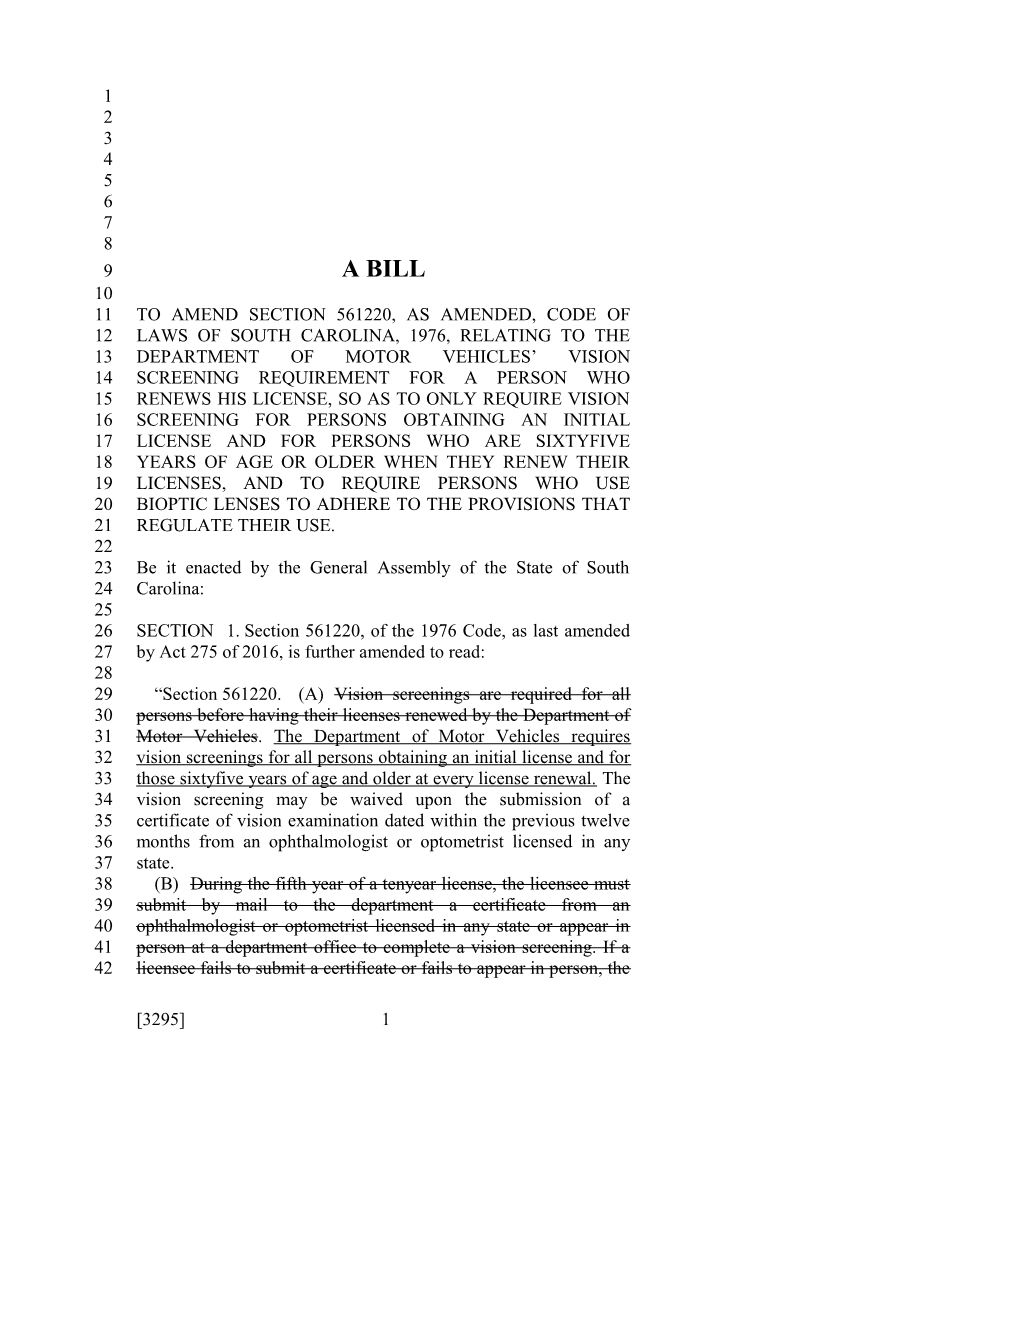 2017-2018 Bill 3295 Text of Previous Version (Dec. 15, 2016) - South Carolina Legislature Online